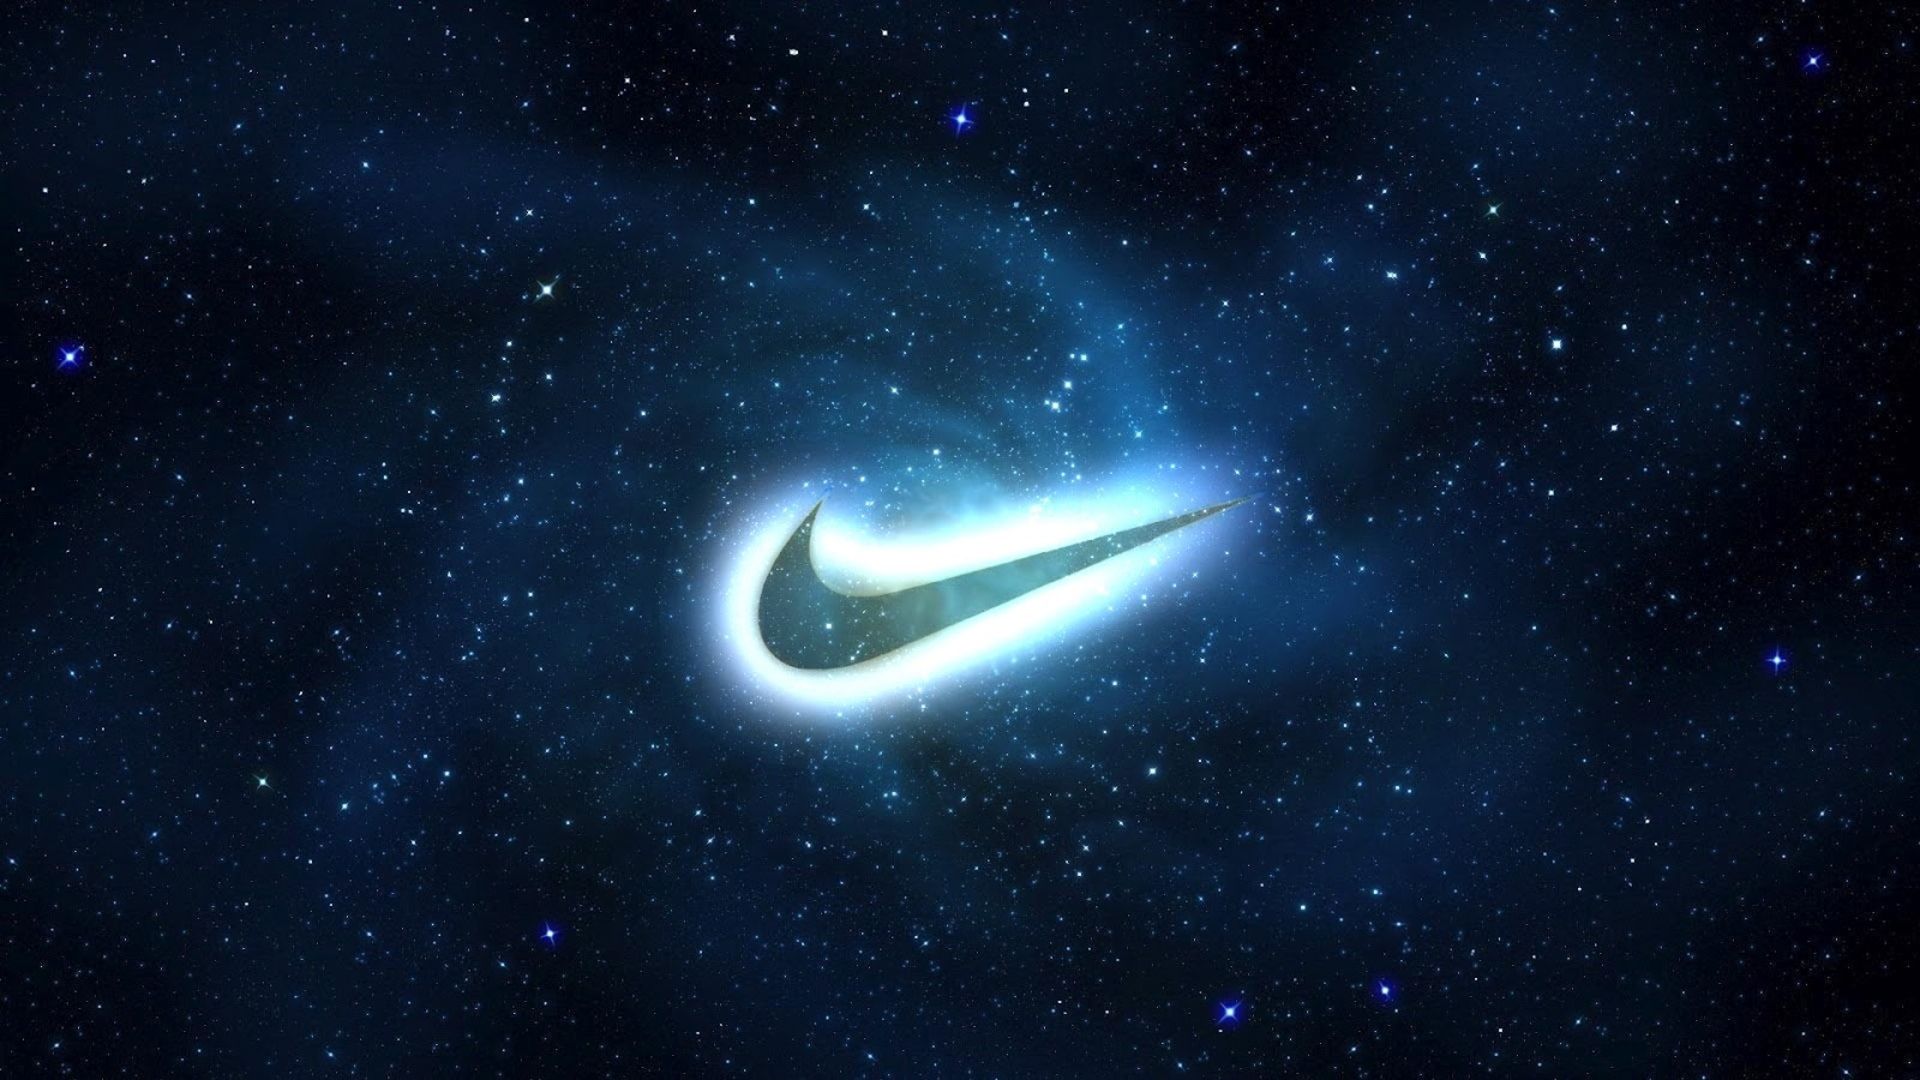 Hình nền Nike Logo Galaxy sẽ khiến bạn cảm thấy rực rỡ và cá tính hơn bao giờ hết. Với sự pha trộn giữa hình ảnh logo Nike đẳng cấp cùng không gian vũ trụ lung linh, bạn sẽ tìm thấy sự thoải mái và thỏa mãn khi sử dụng chúng!